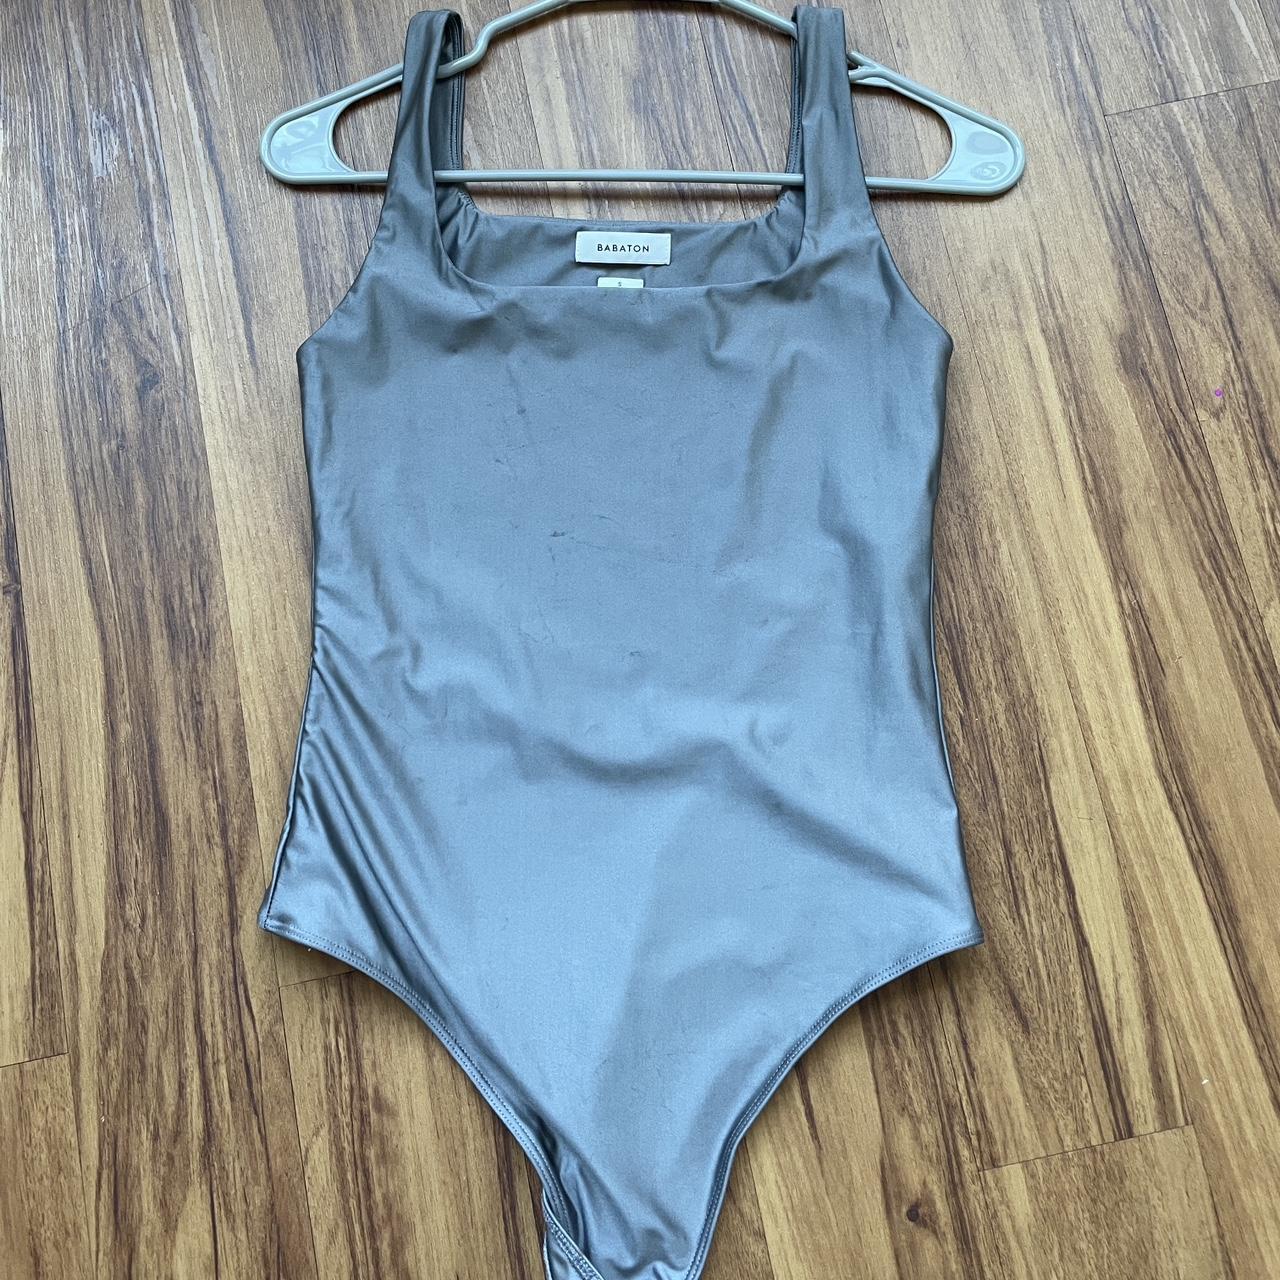 Aritzia Babaton Contour bodysuit in silver grey - Depop